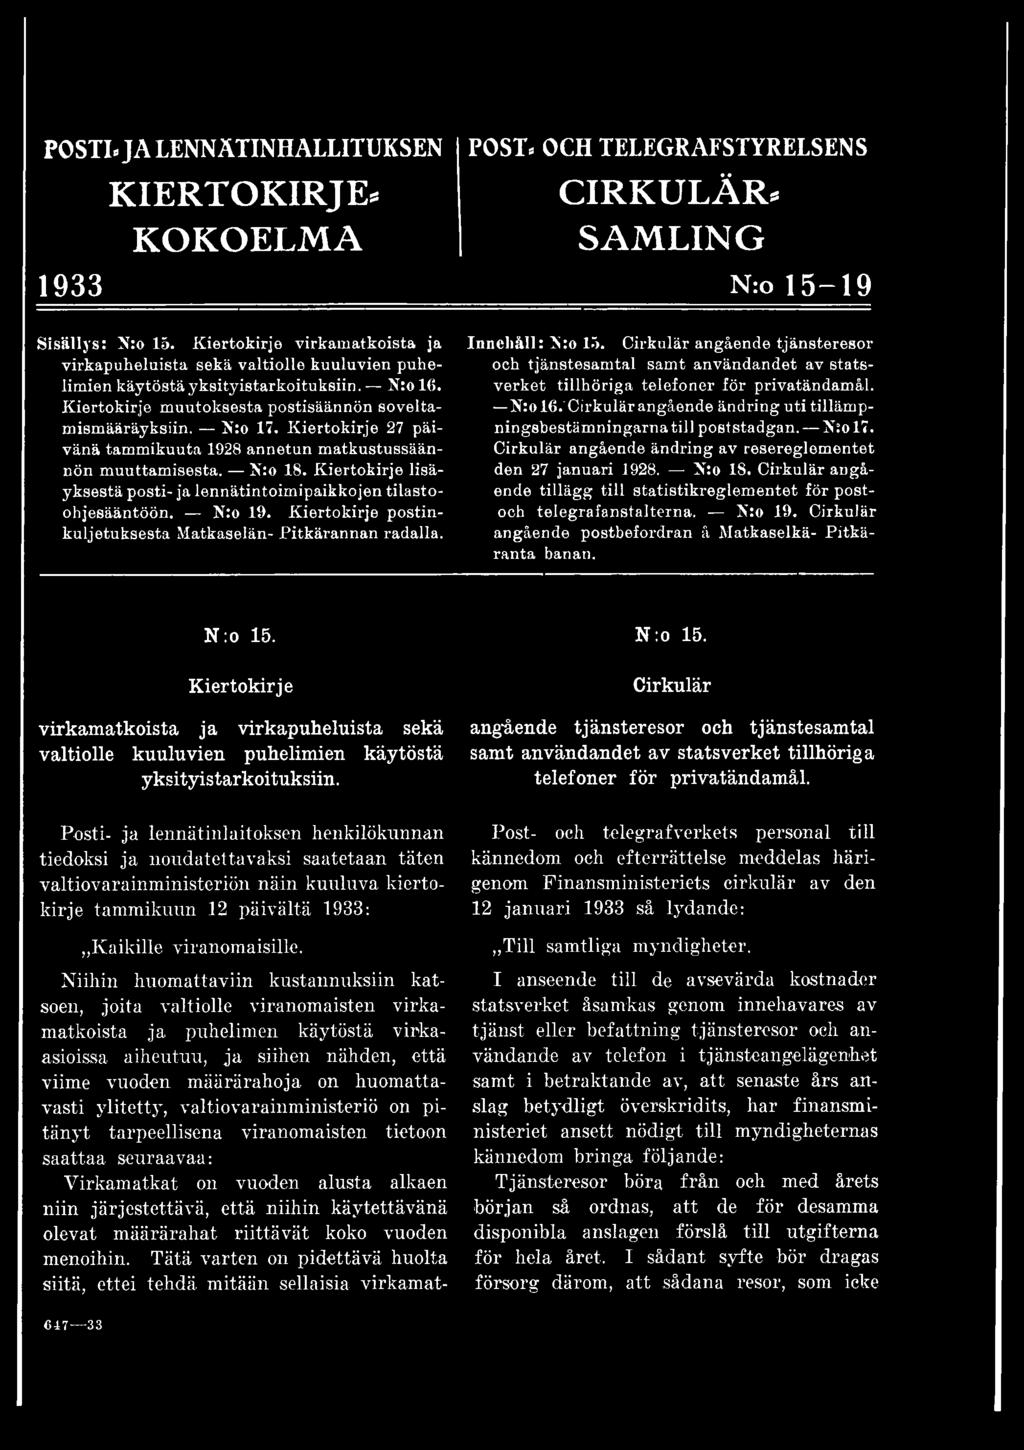 K:ol6.~ angående ändring utitilläm p- ningsbestäm ningarnatill poststadgan. K:ol7. angående ändring av resereglem entet den 27 januari 1928. K:o 18.